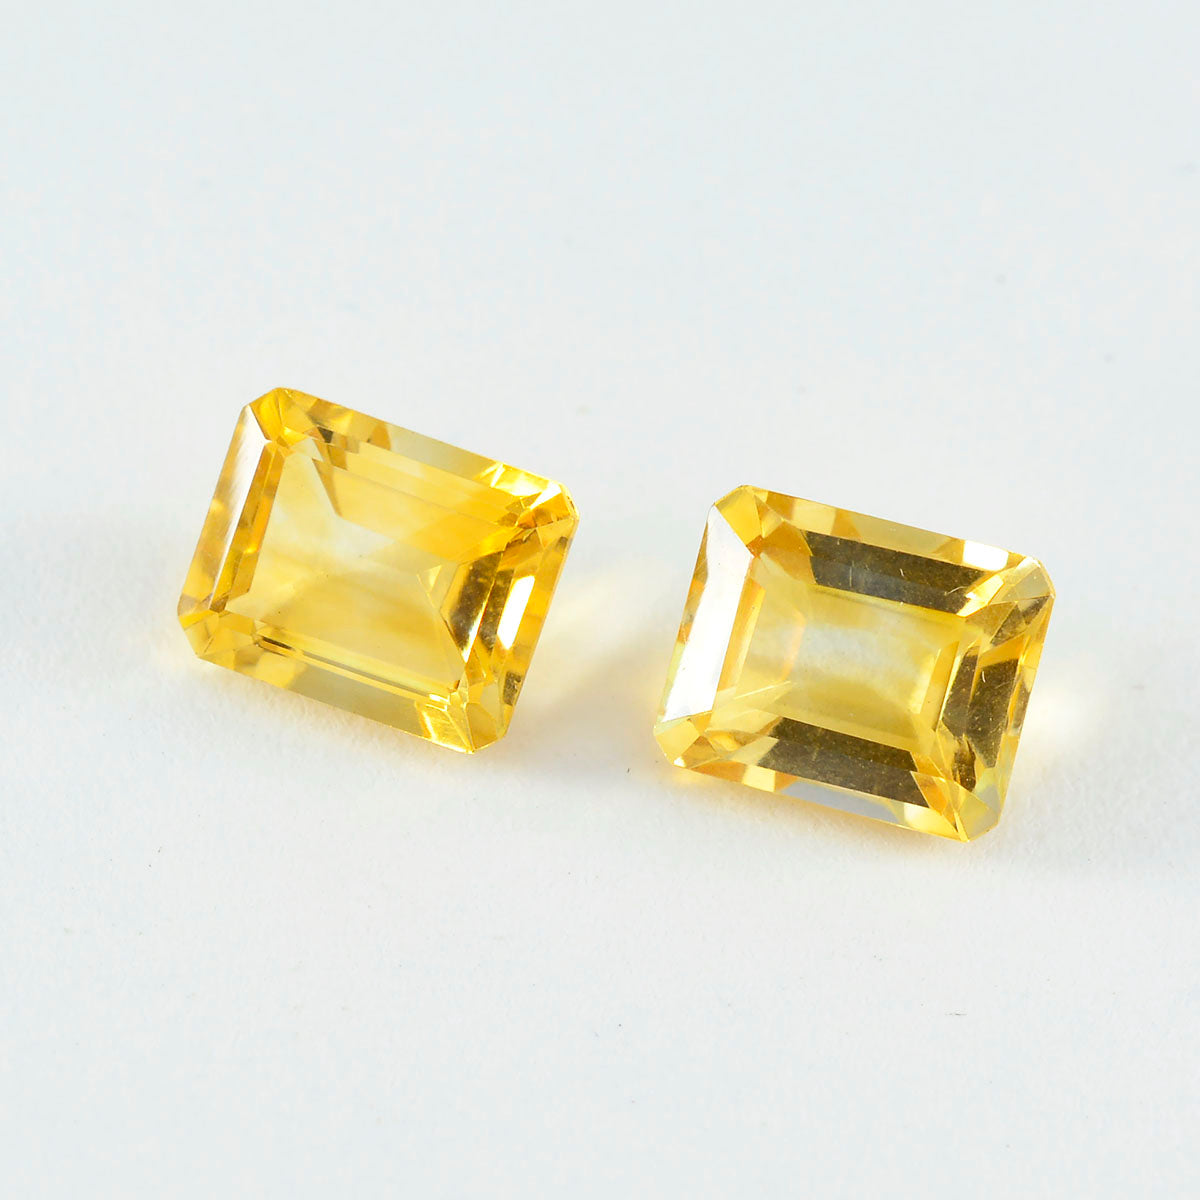 riyogems 1шт натуральный желтый цитрин ограненный 10x14 мм восьмиугольная форма драгоценный камень отличного качества